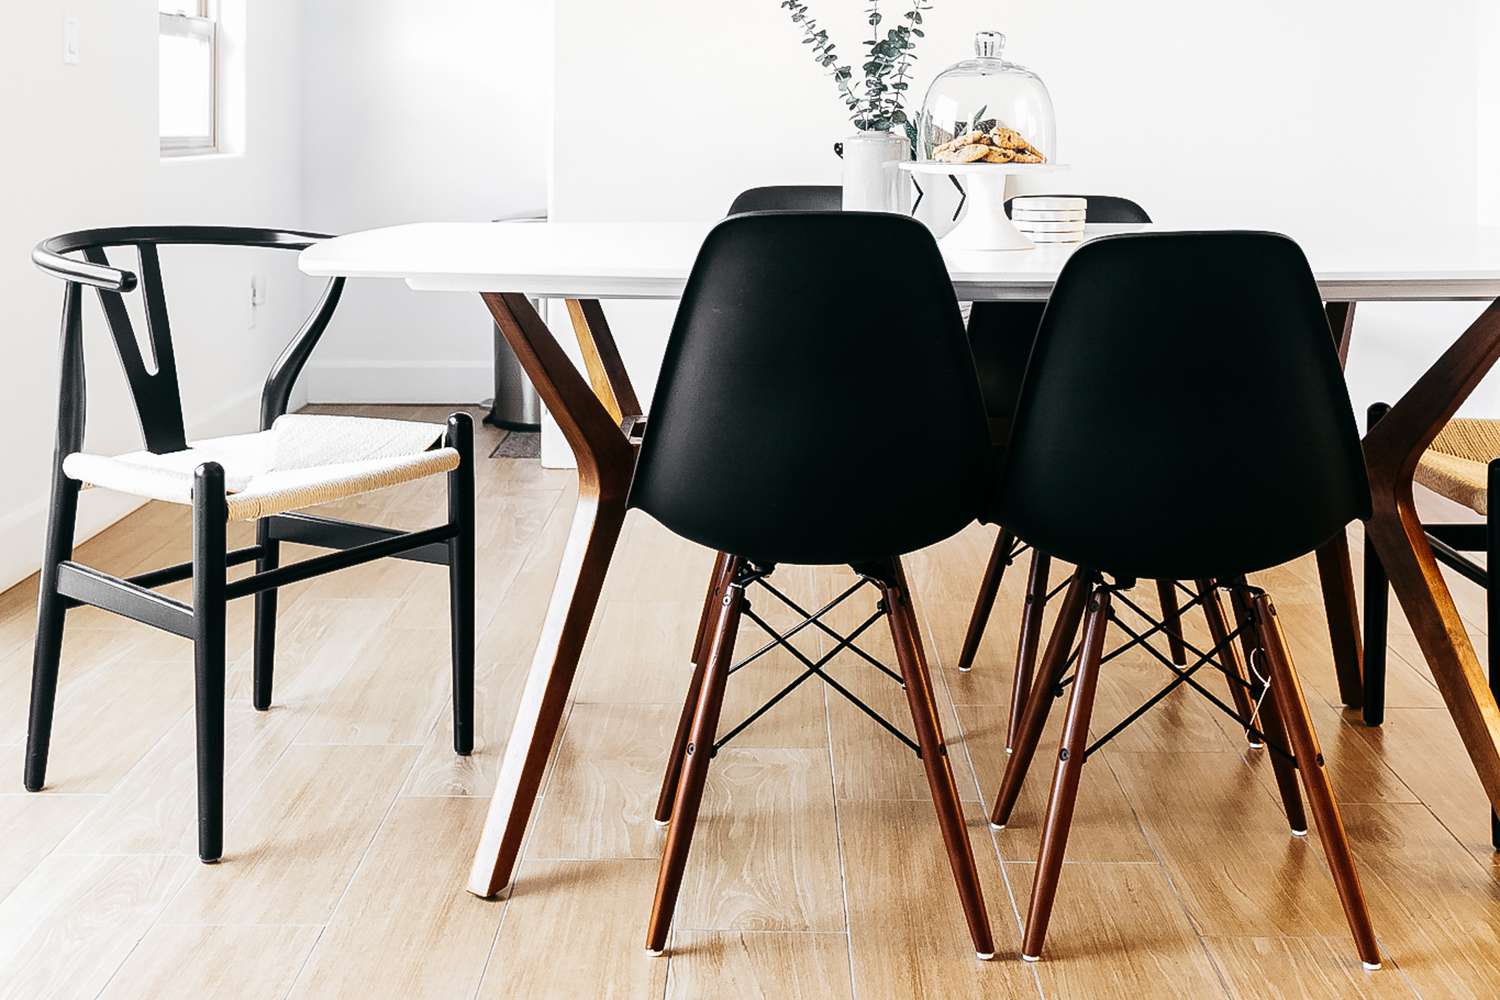 Cadeiras laterais moldadas Eames pretas ao redor da mesa de jantar branca